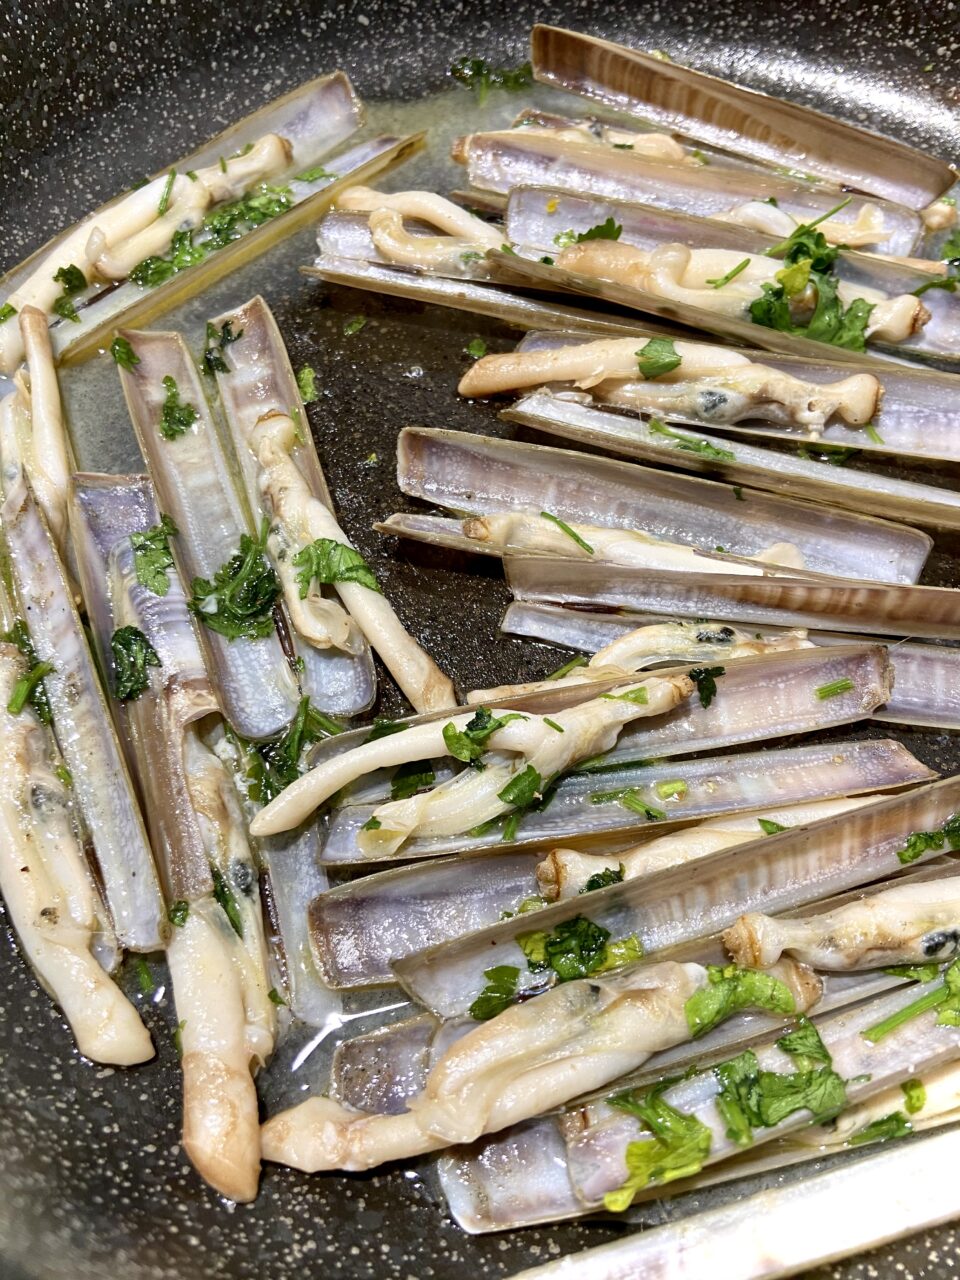 Cape longhe ricetta cannolicchi con aglio e prezzemolo in padella